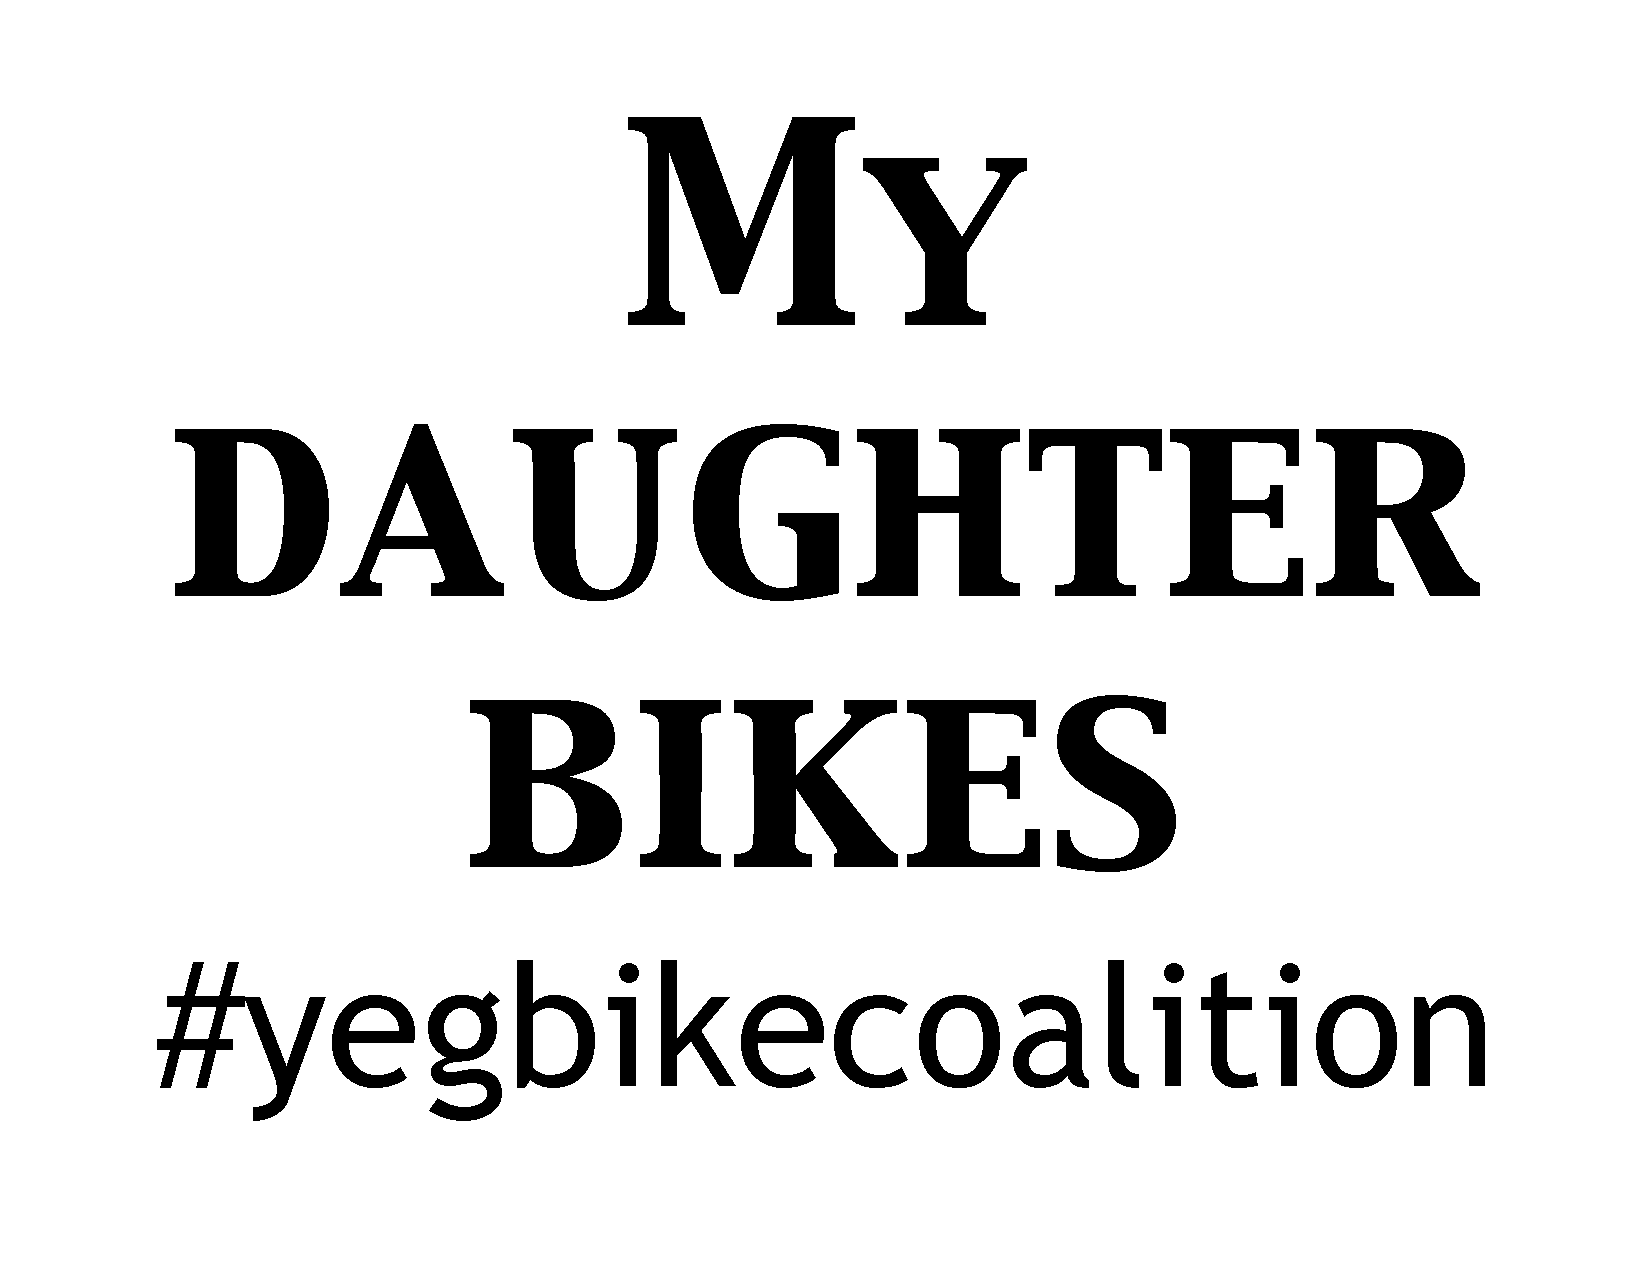 My daughter bikes